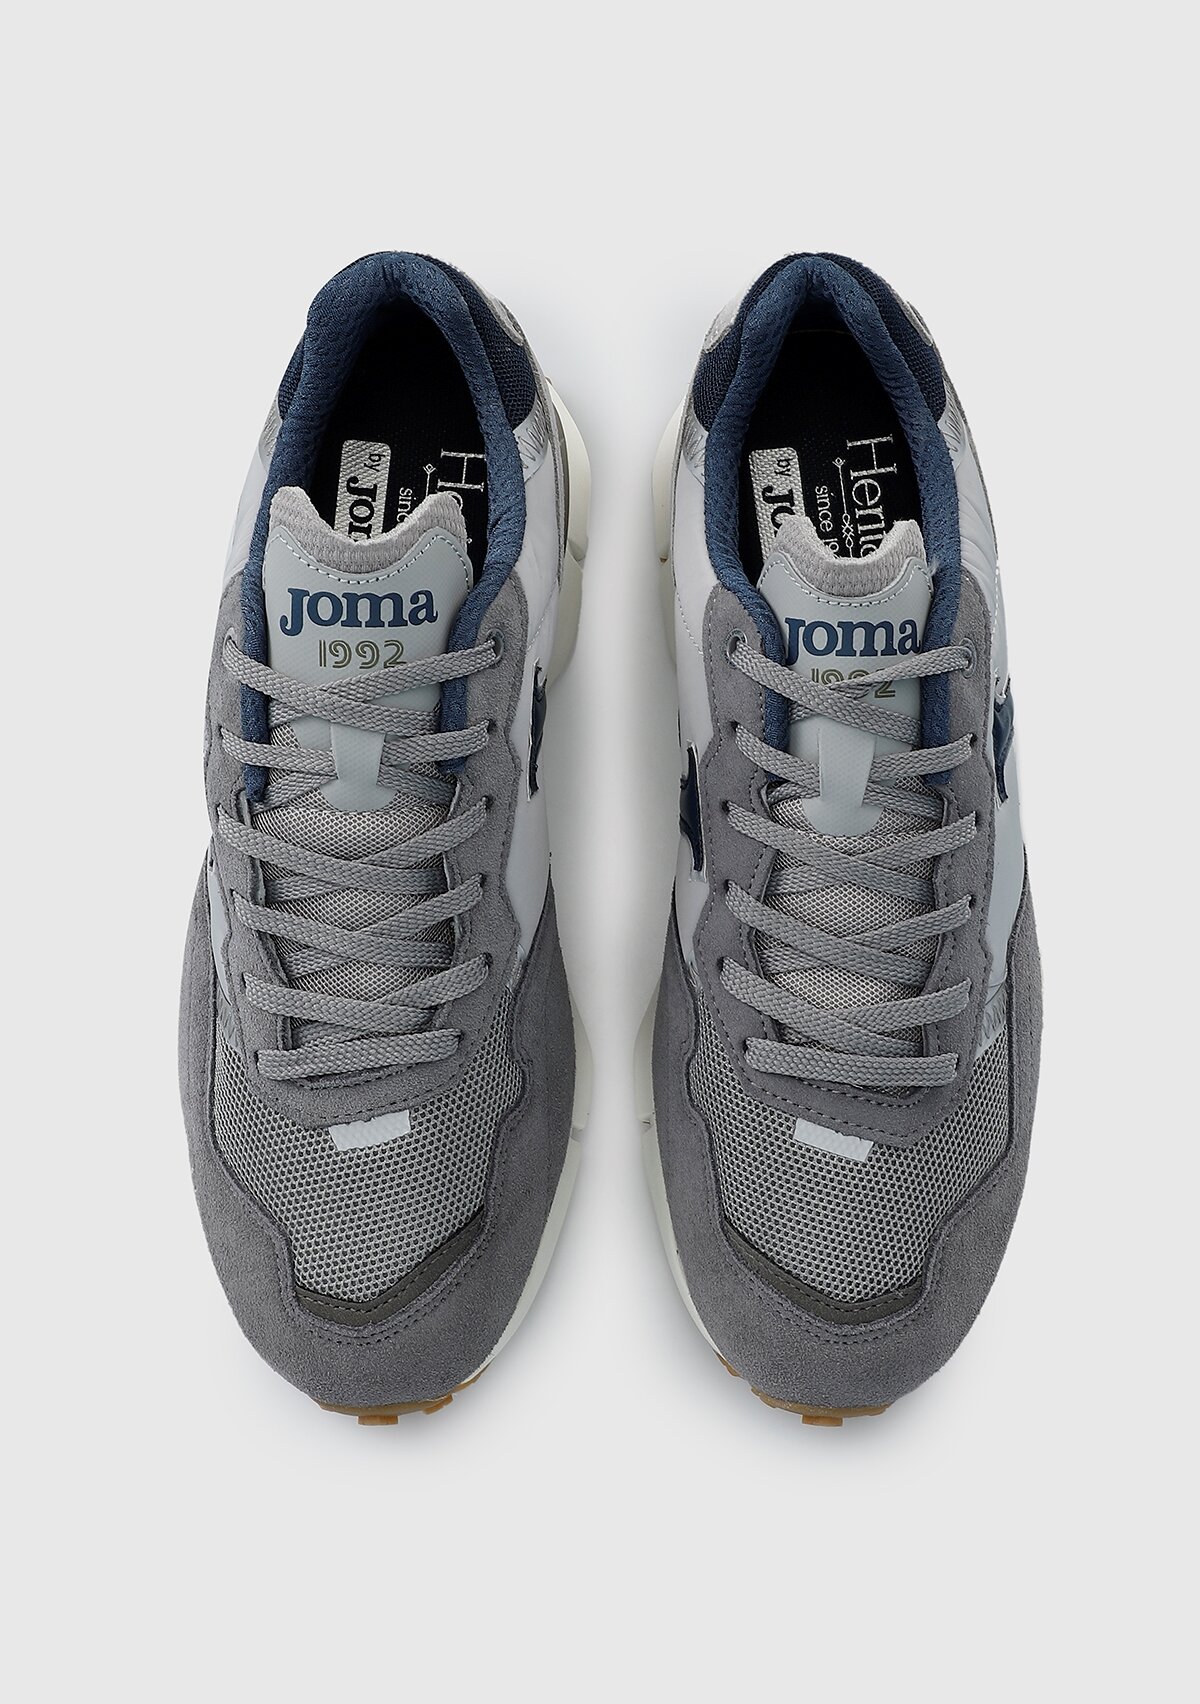 Zapatillas sneaker de hombre JOMA c.1992 men 2312 color gris